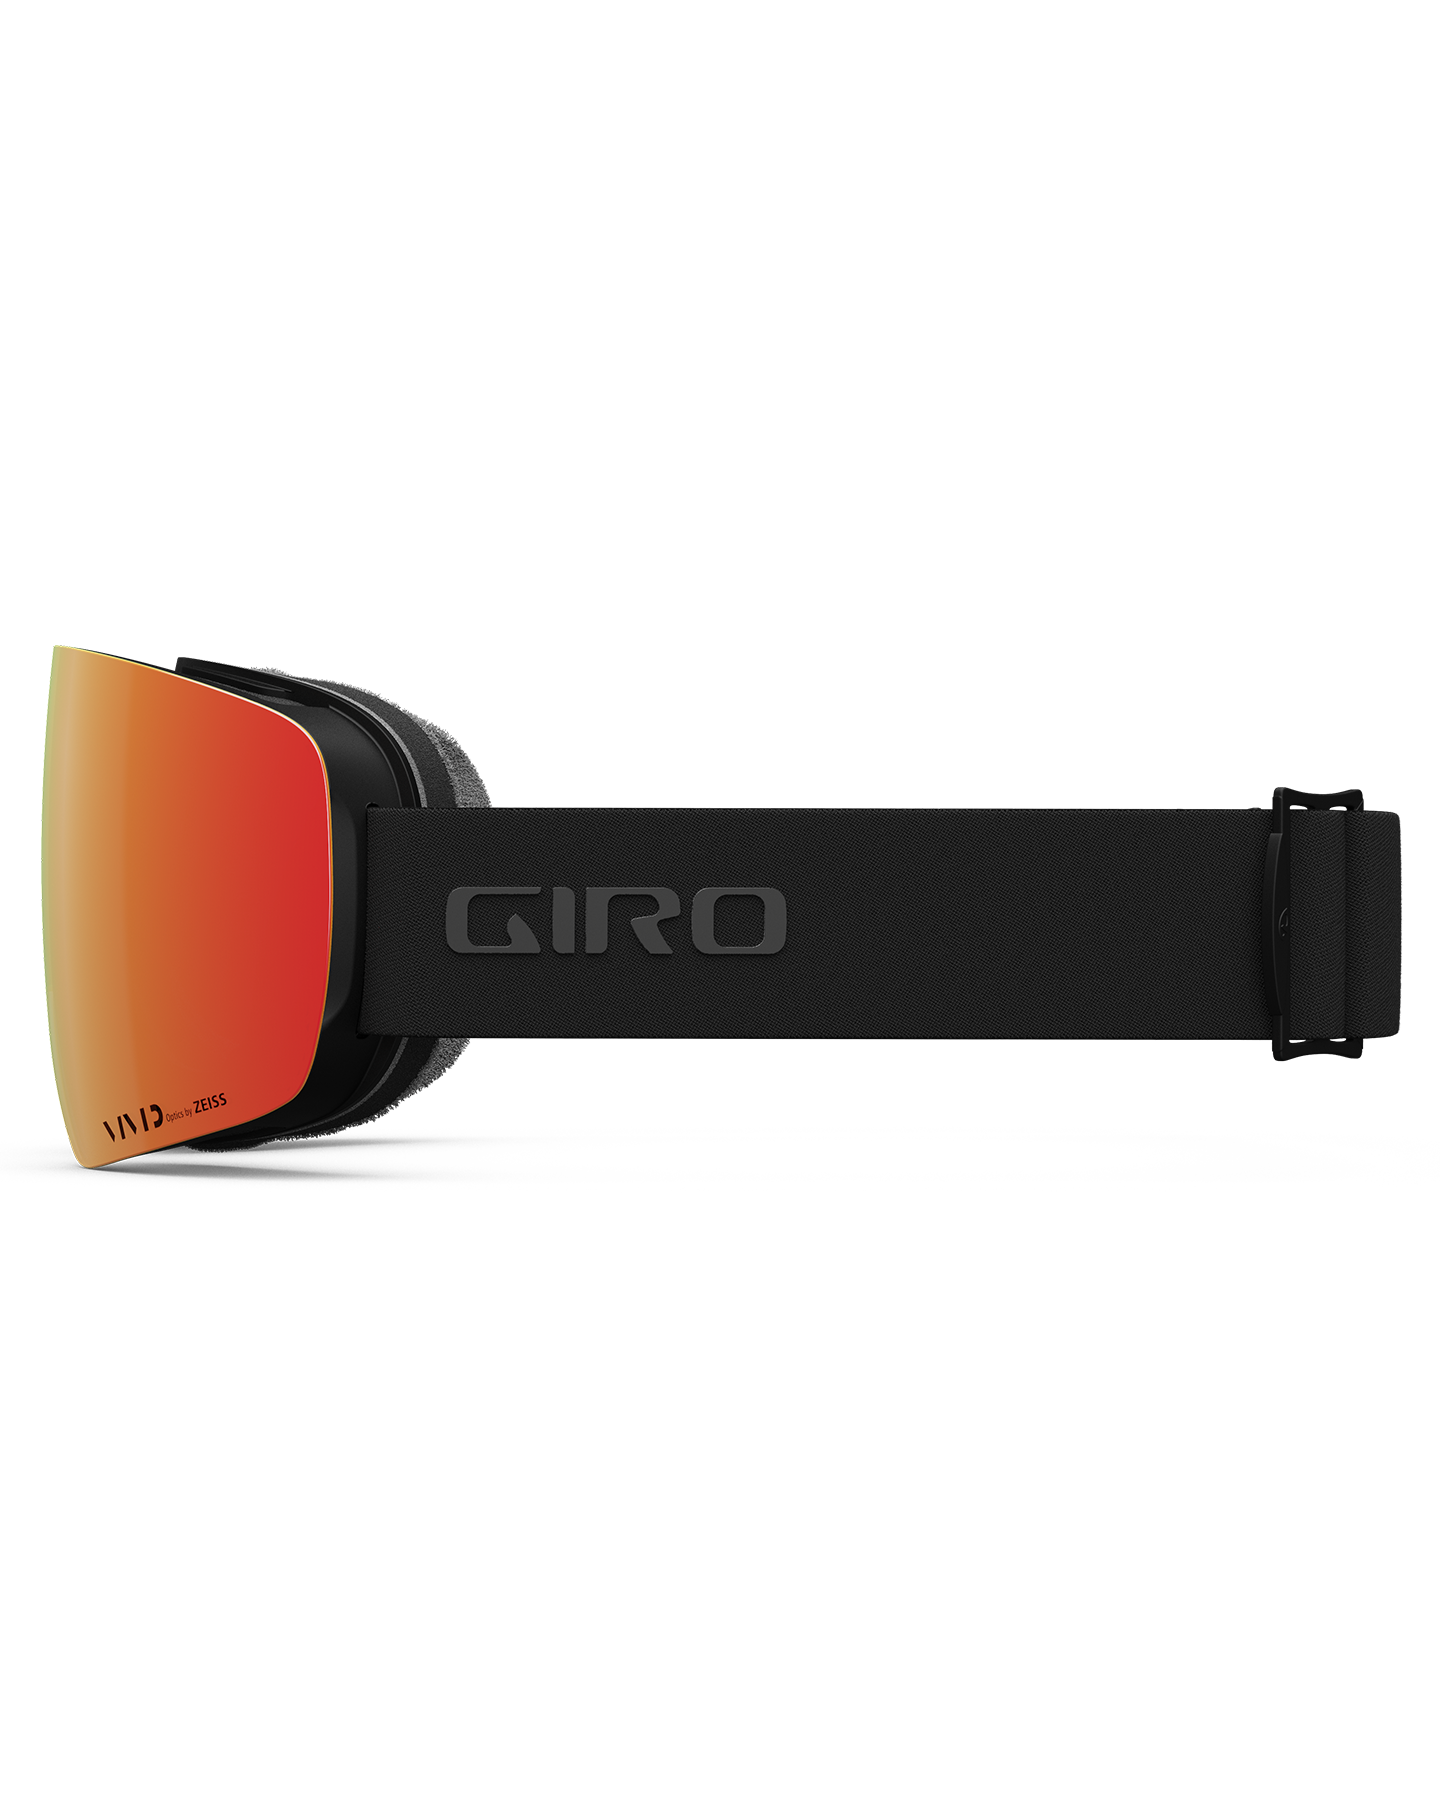 Giro Contour Snow Goggles Snow Goggles - Trojan Wake Ski Snow